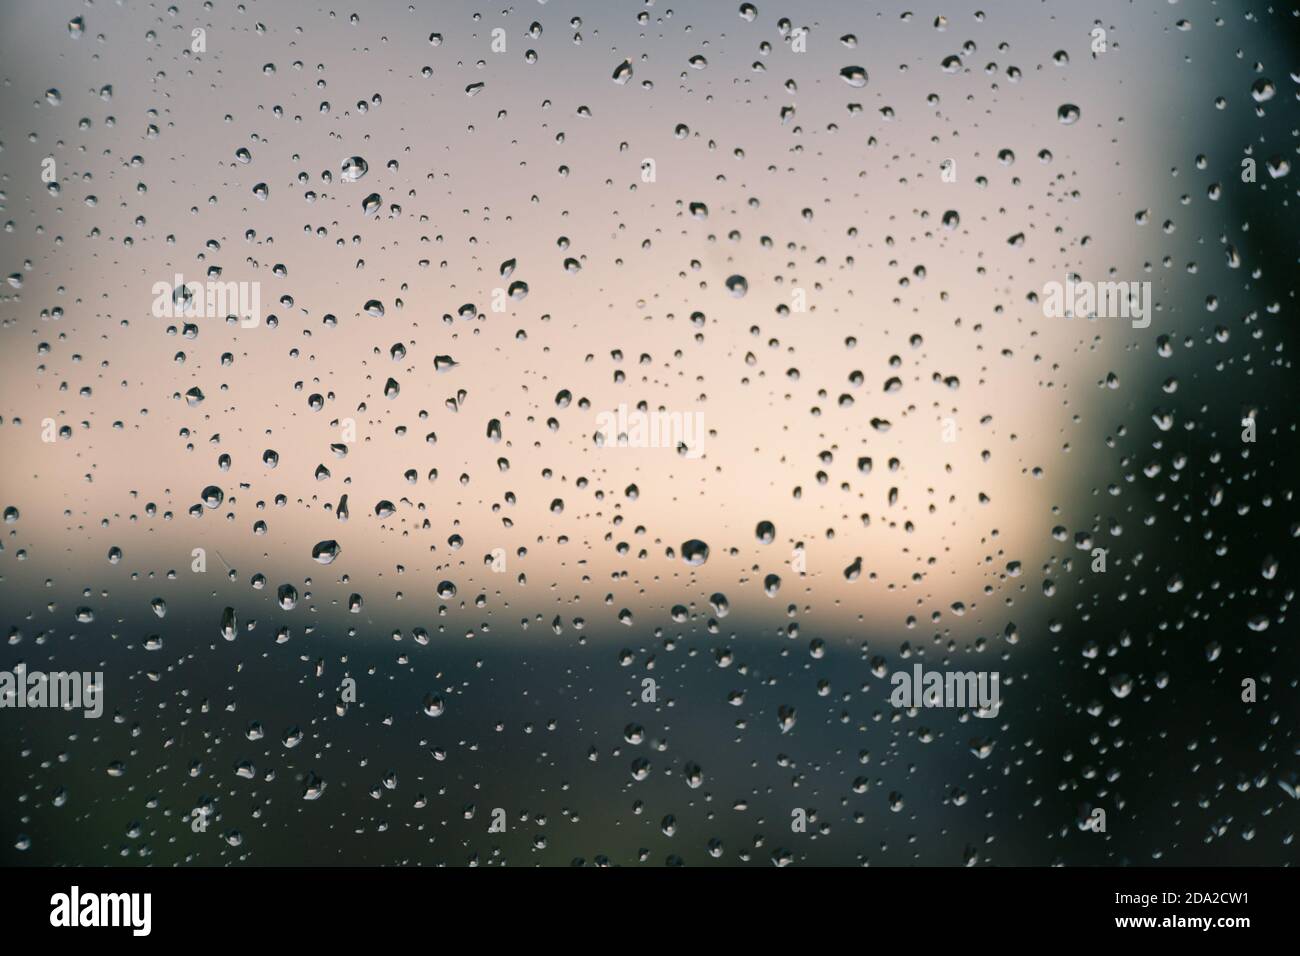 Wasser tropft nach Regen auf das Fensterglas. Makro von Regentropfen als abstrakter Hintergrund mit geringer Schärfentiefe. Regnerisches Wetter, melancholische Stimmung. Stockfoto